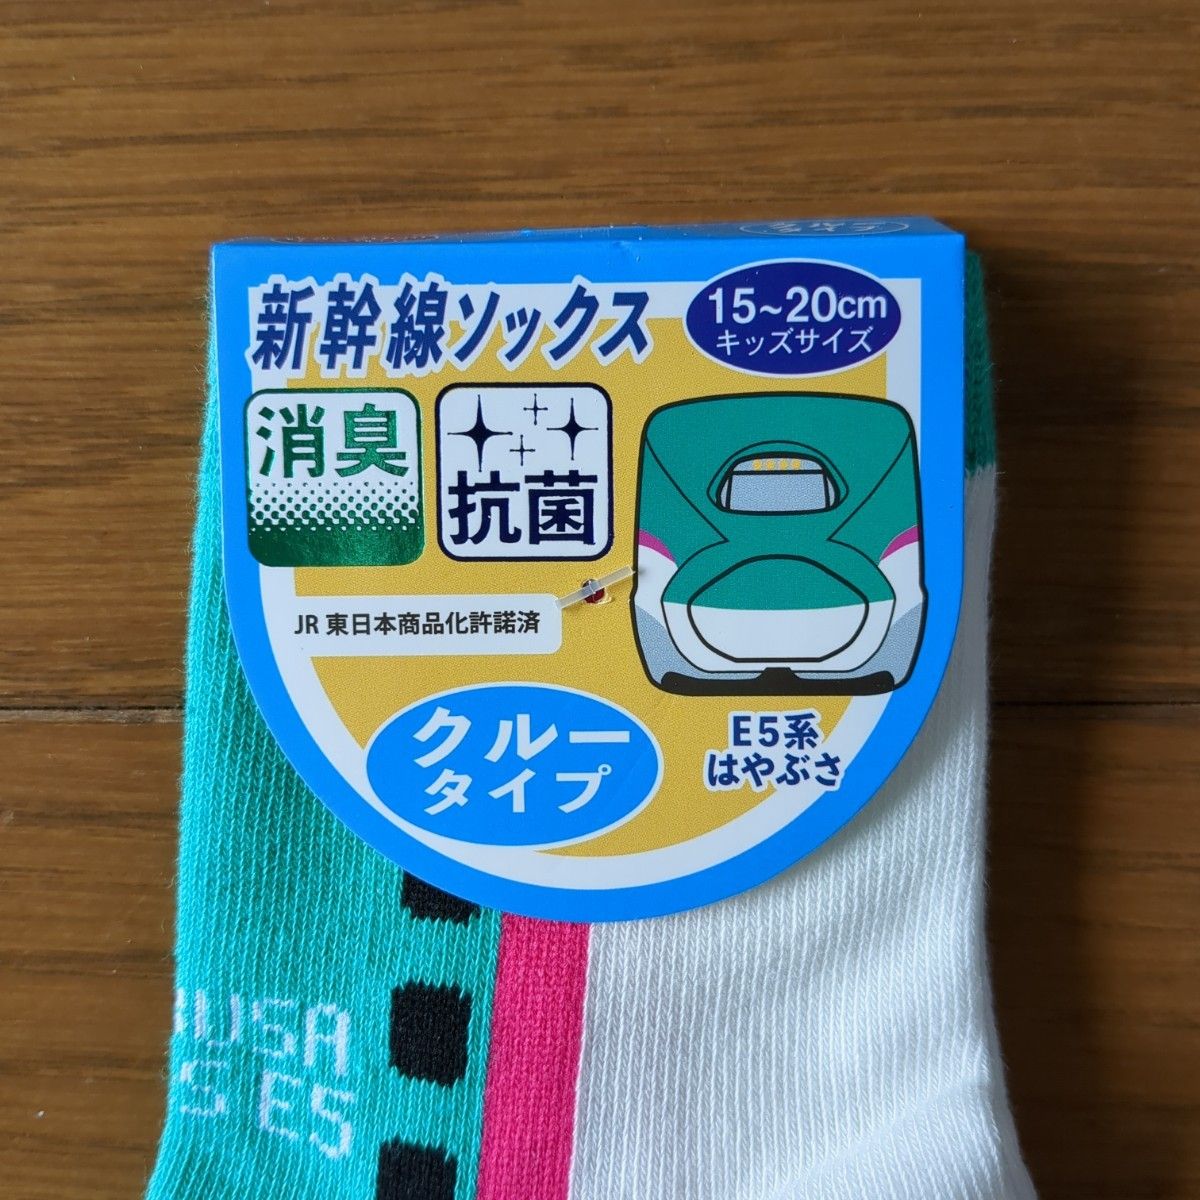 【即購入OK】新幹線ソックス クルーソックス靴下 2足セット 15-20cm 3